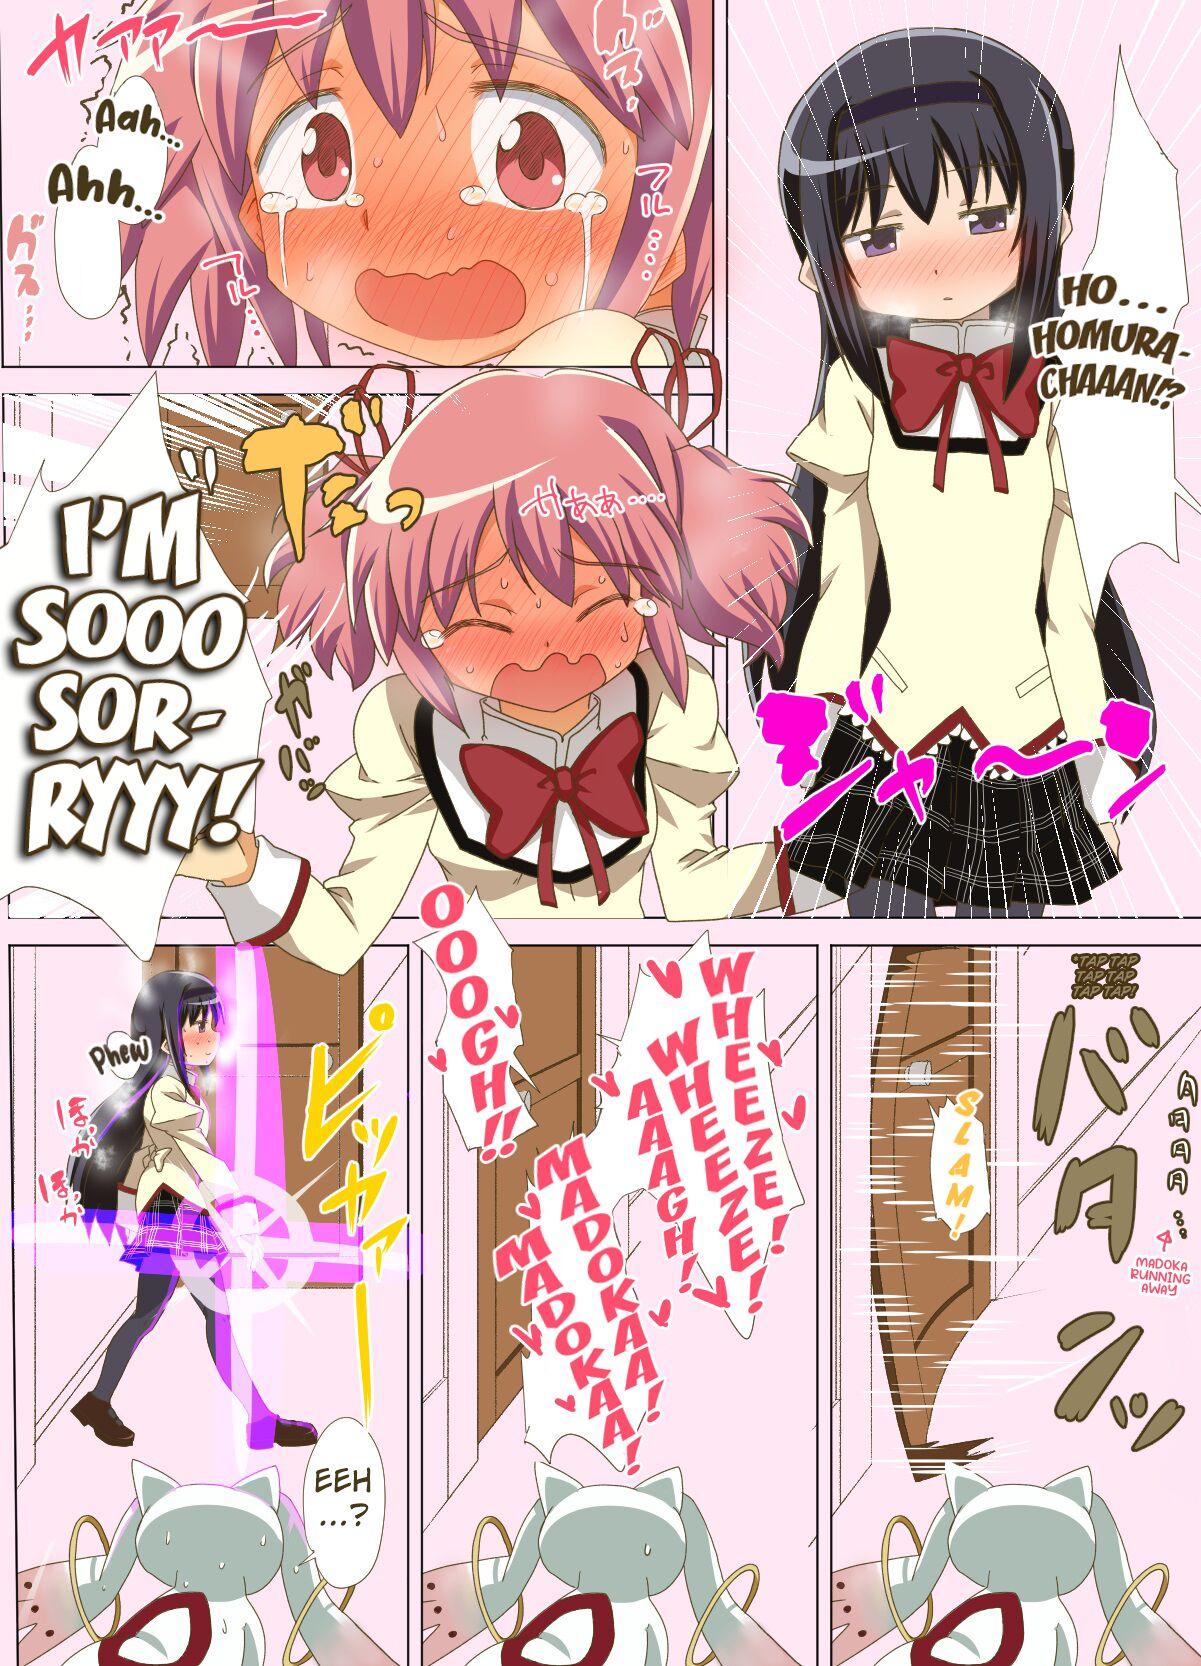 Massive Madohomu Gas Expulsion Manga - Puella magi madoka magica Lesbian - Page 6